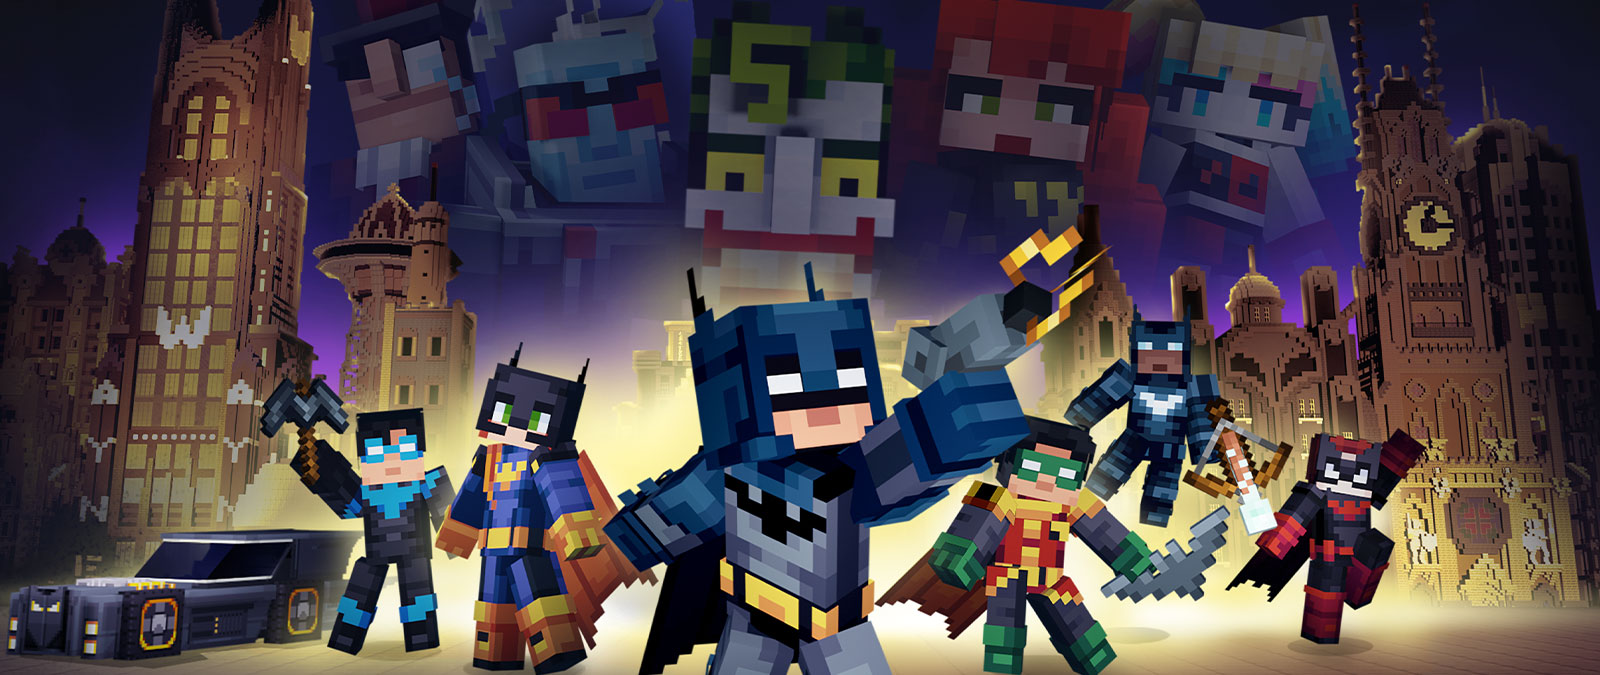 Batman és a Denevércsalád együtt pózolnak a Minecraftben épített Gotham City-t figyelő gonosztevőkkel.